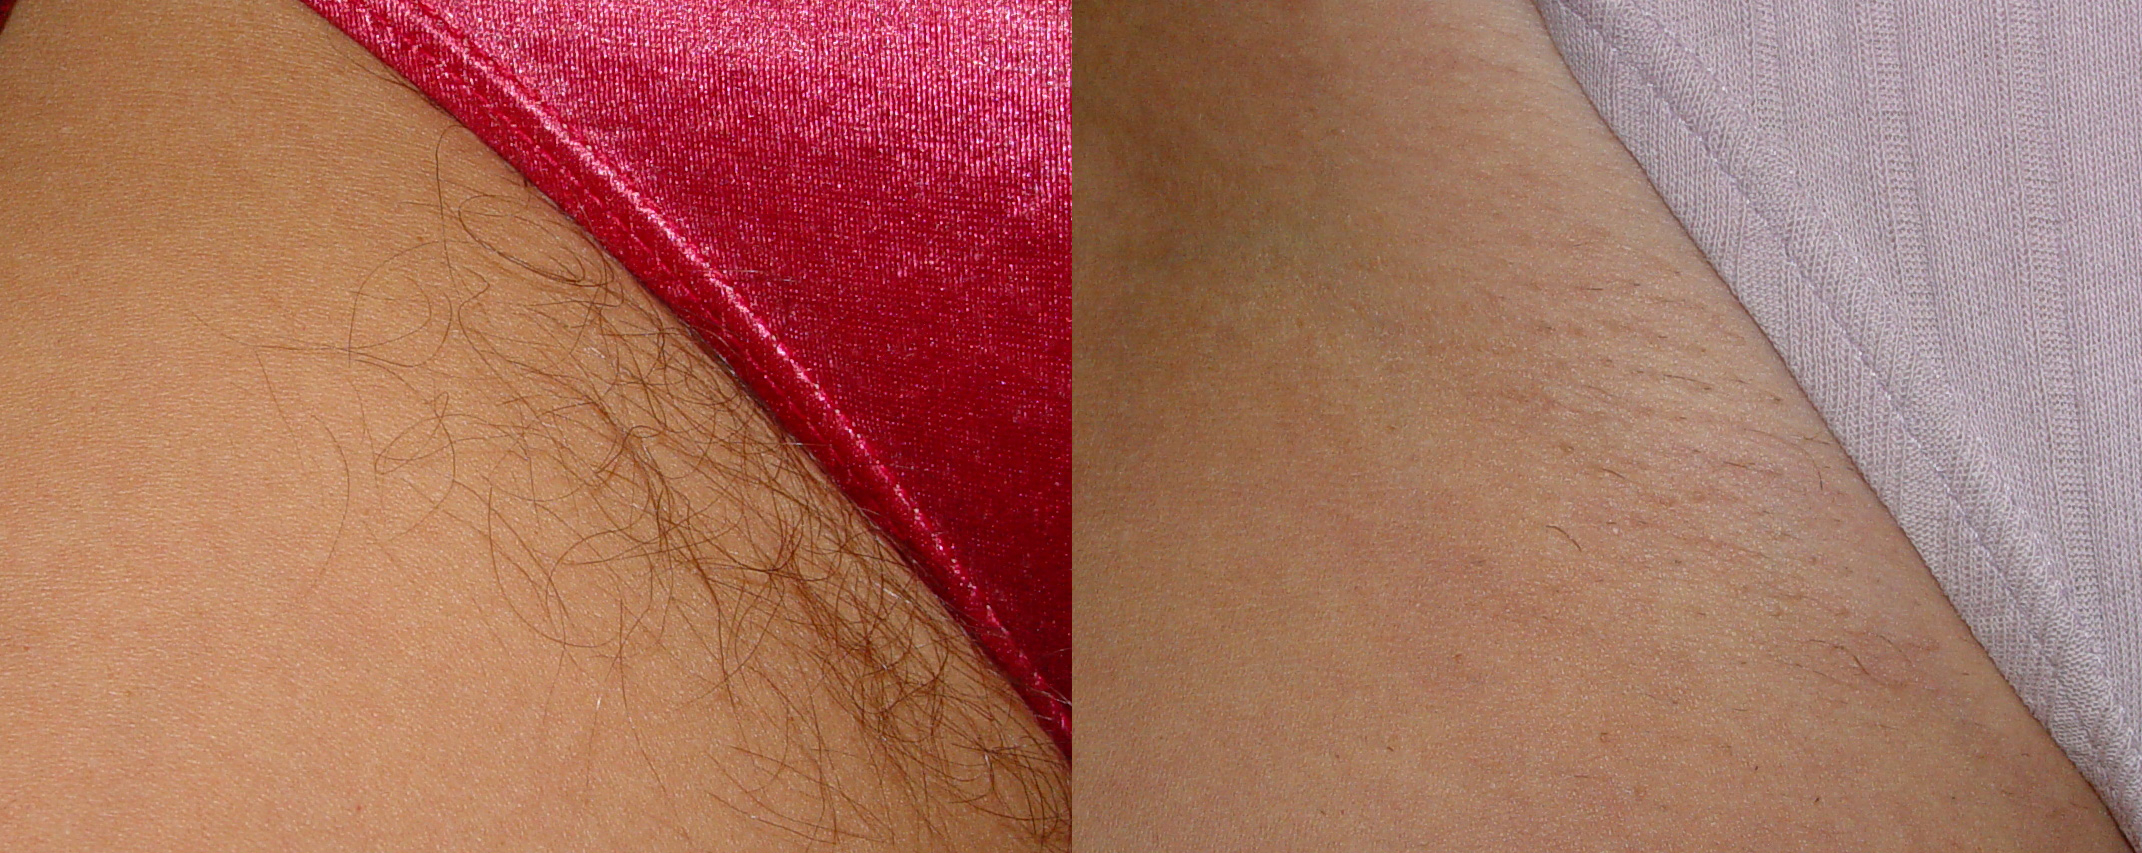 Русская телочка в розовых перчатках делает депиляцию интимных зон мужику перед камерой